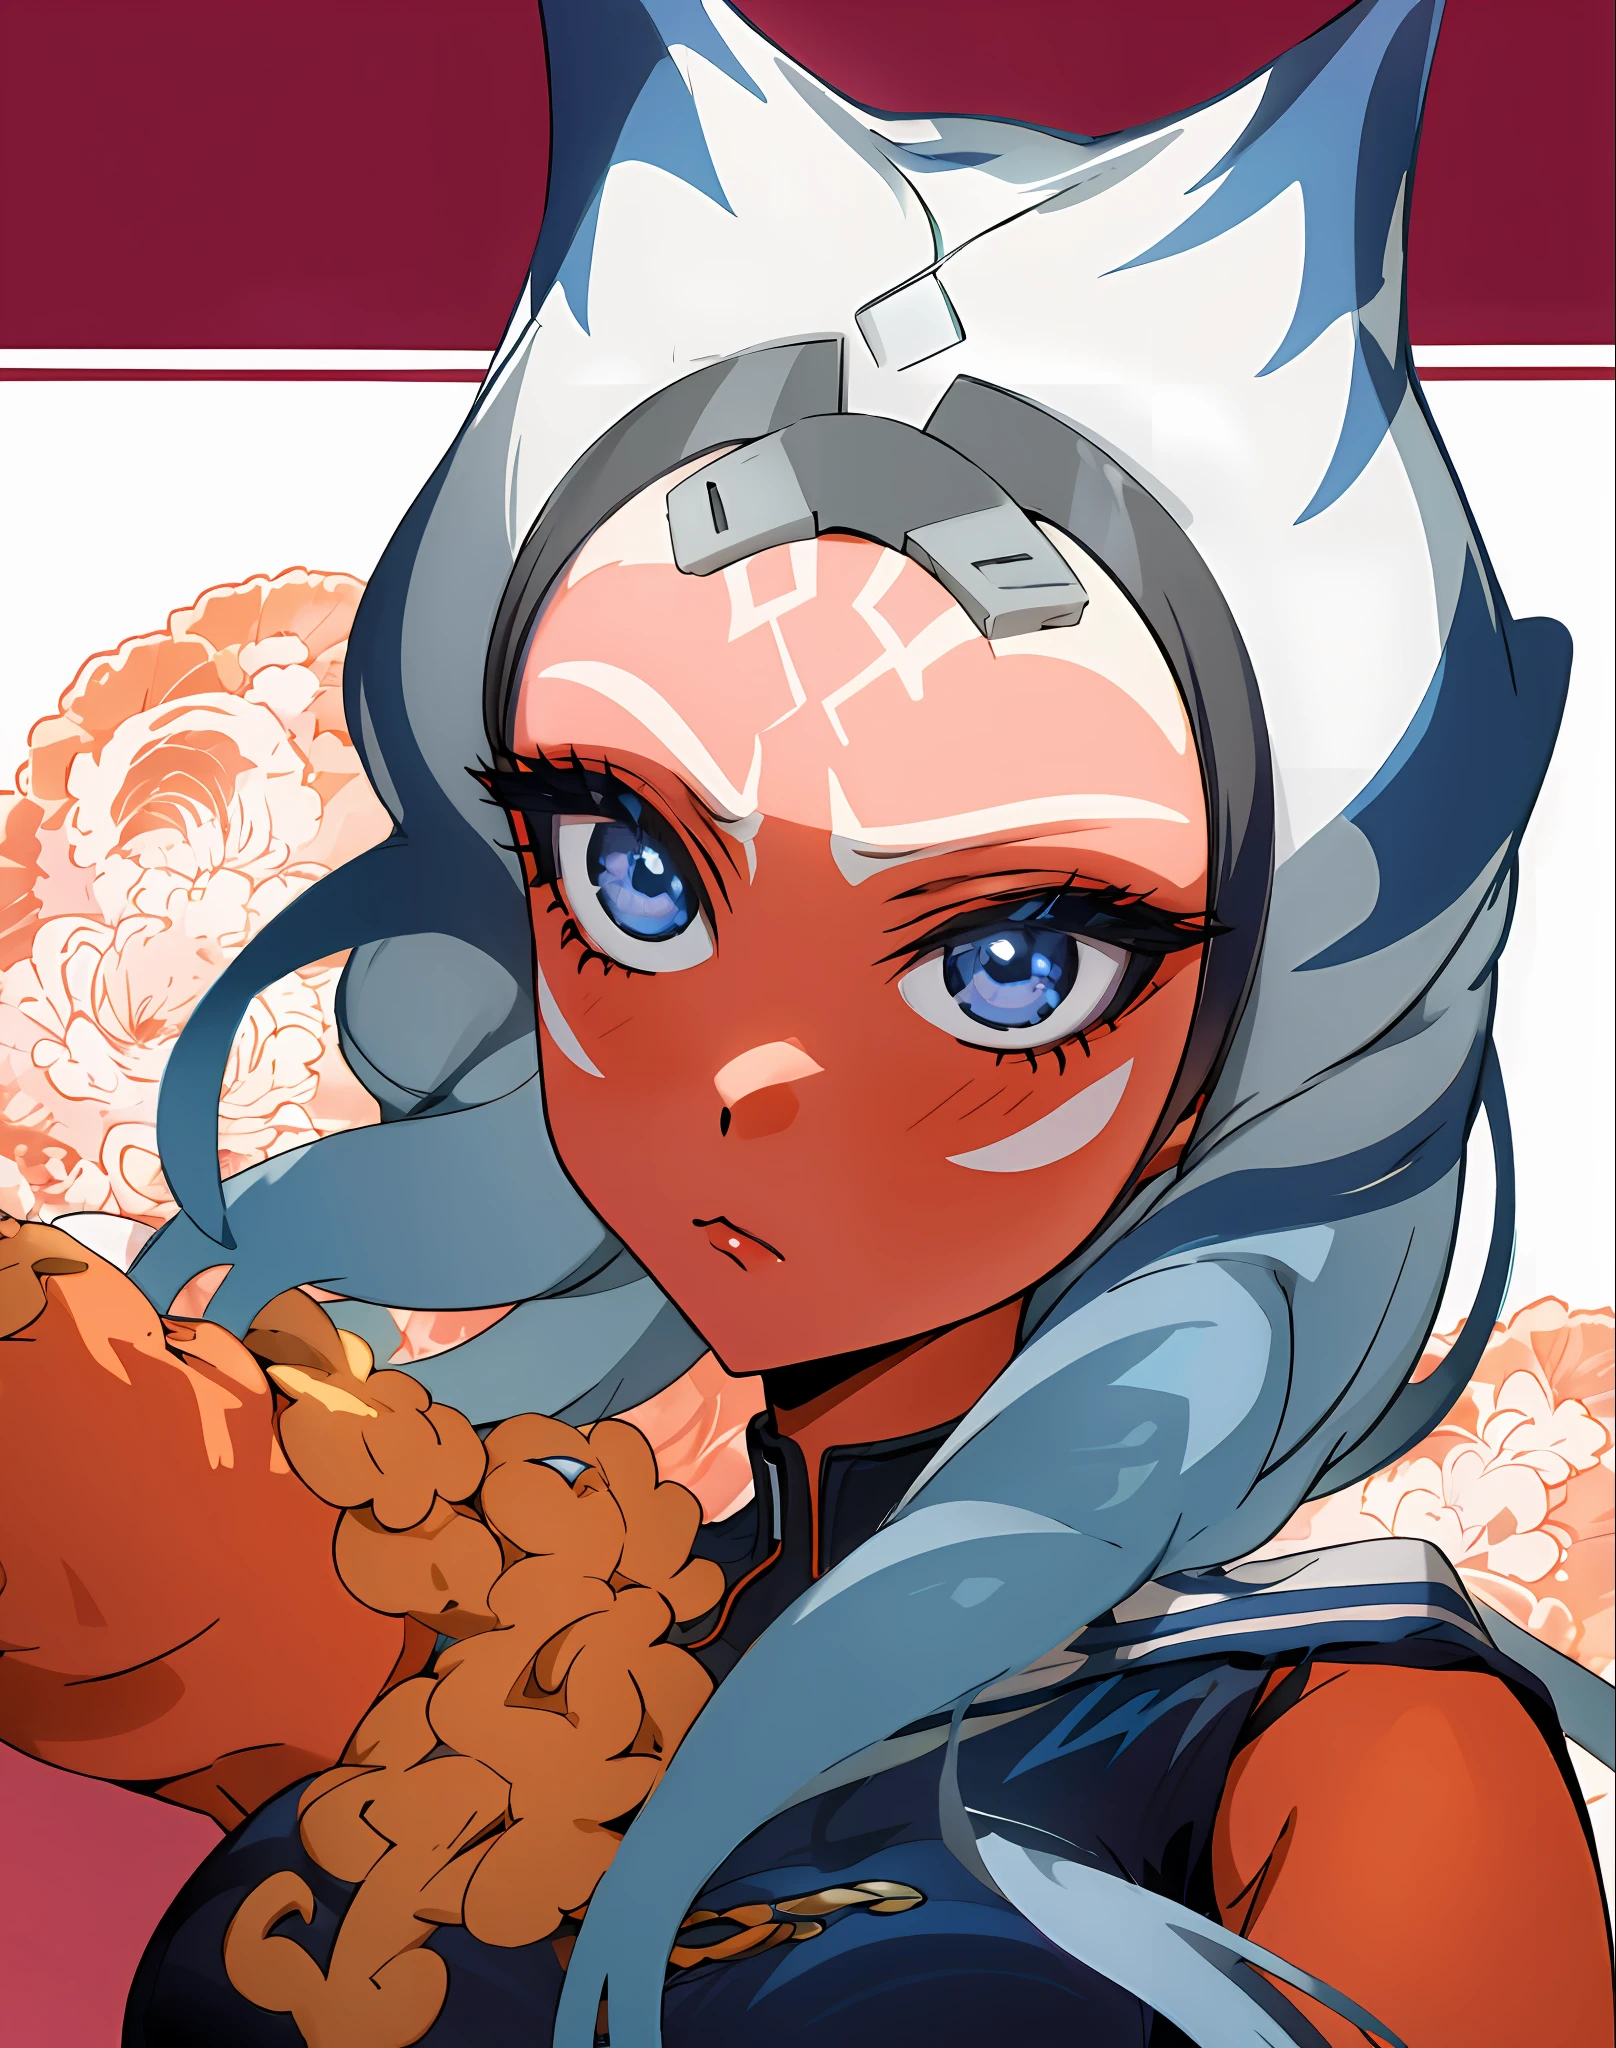 1女孩, 蓝眼睛, 橘皮组织, 触手头发 bisquedoll 动漫风格